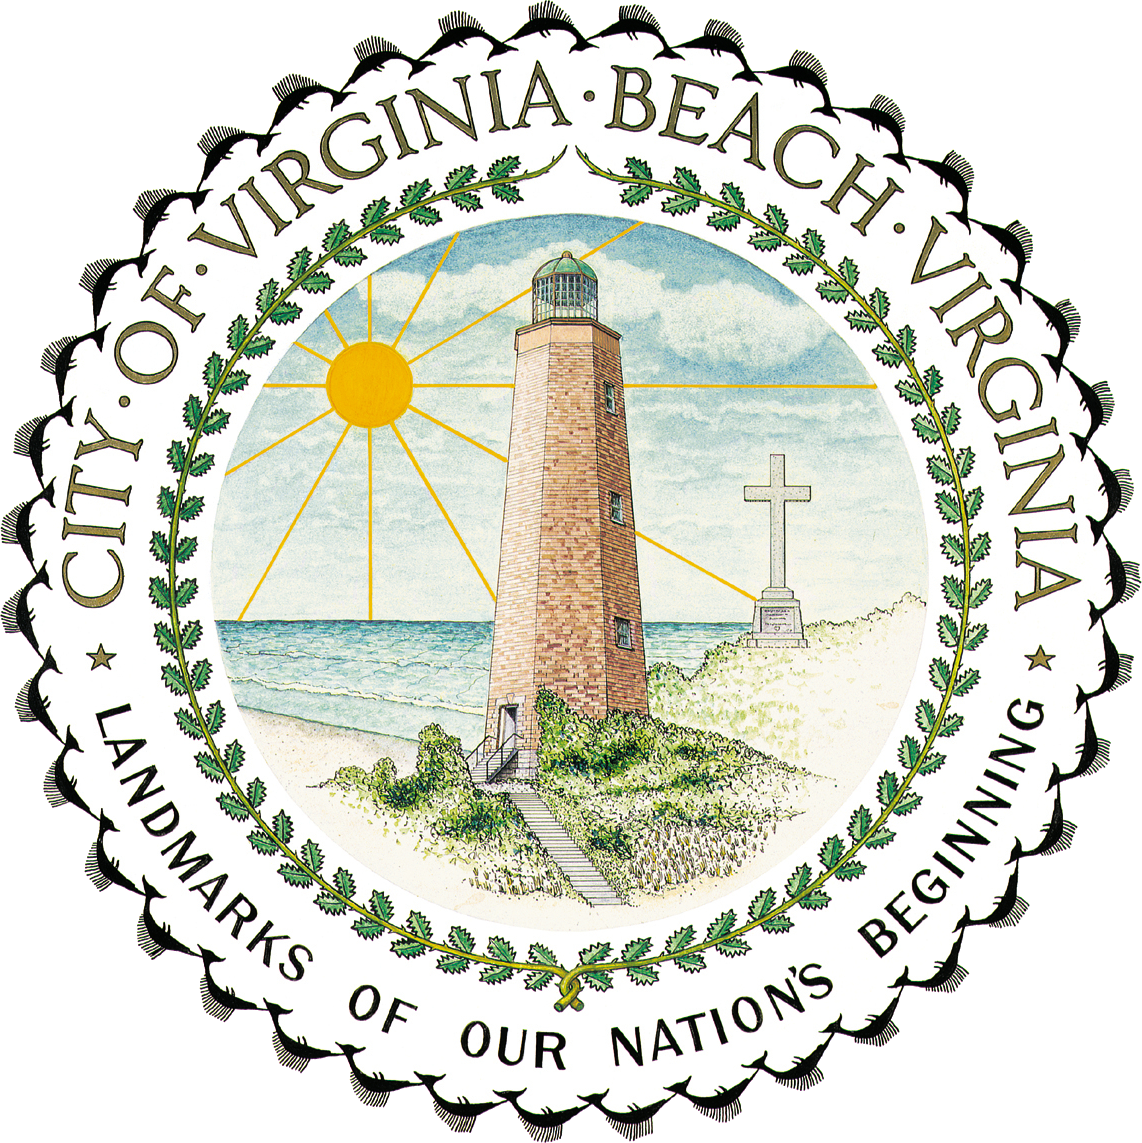 Virginia Beach logo and seal